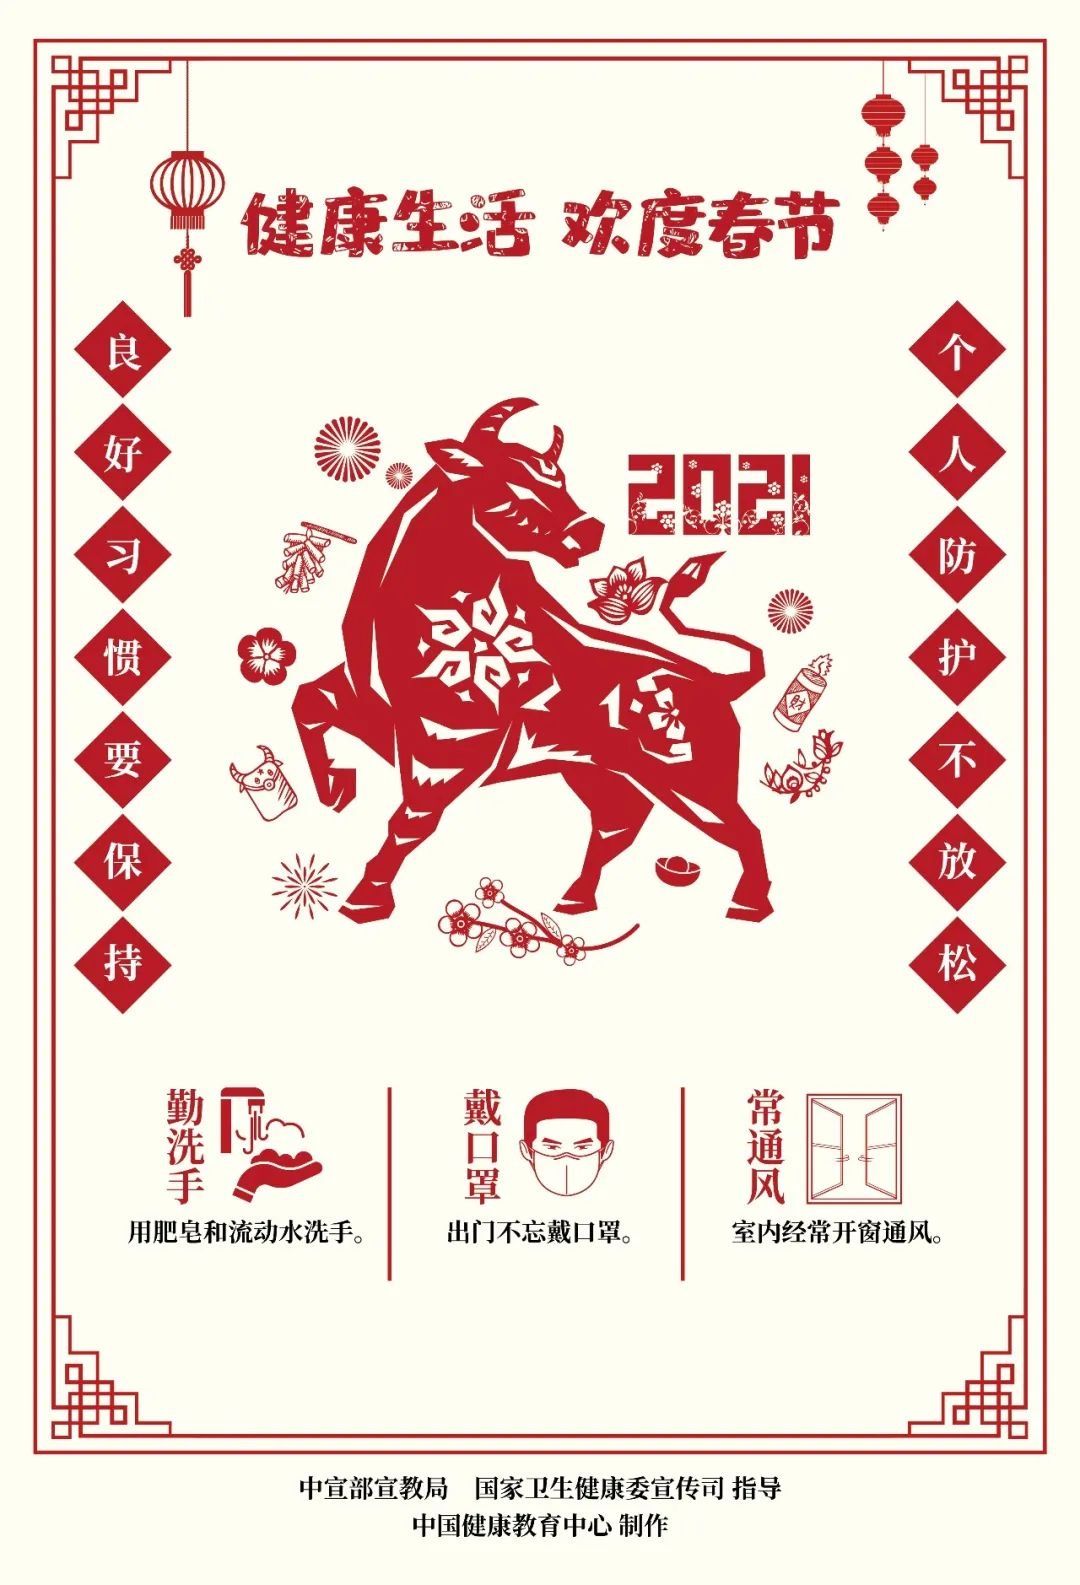 文明健康 欢度春节这波海报有点“牛”